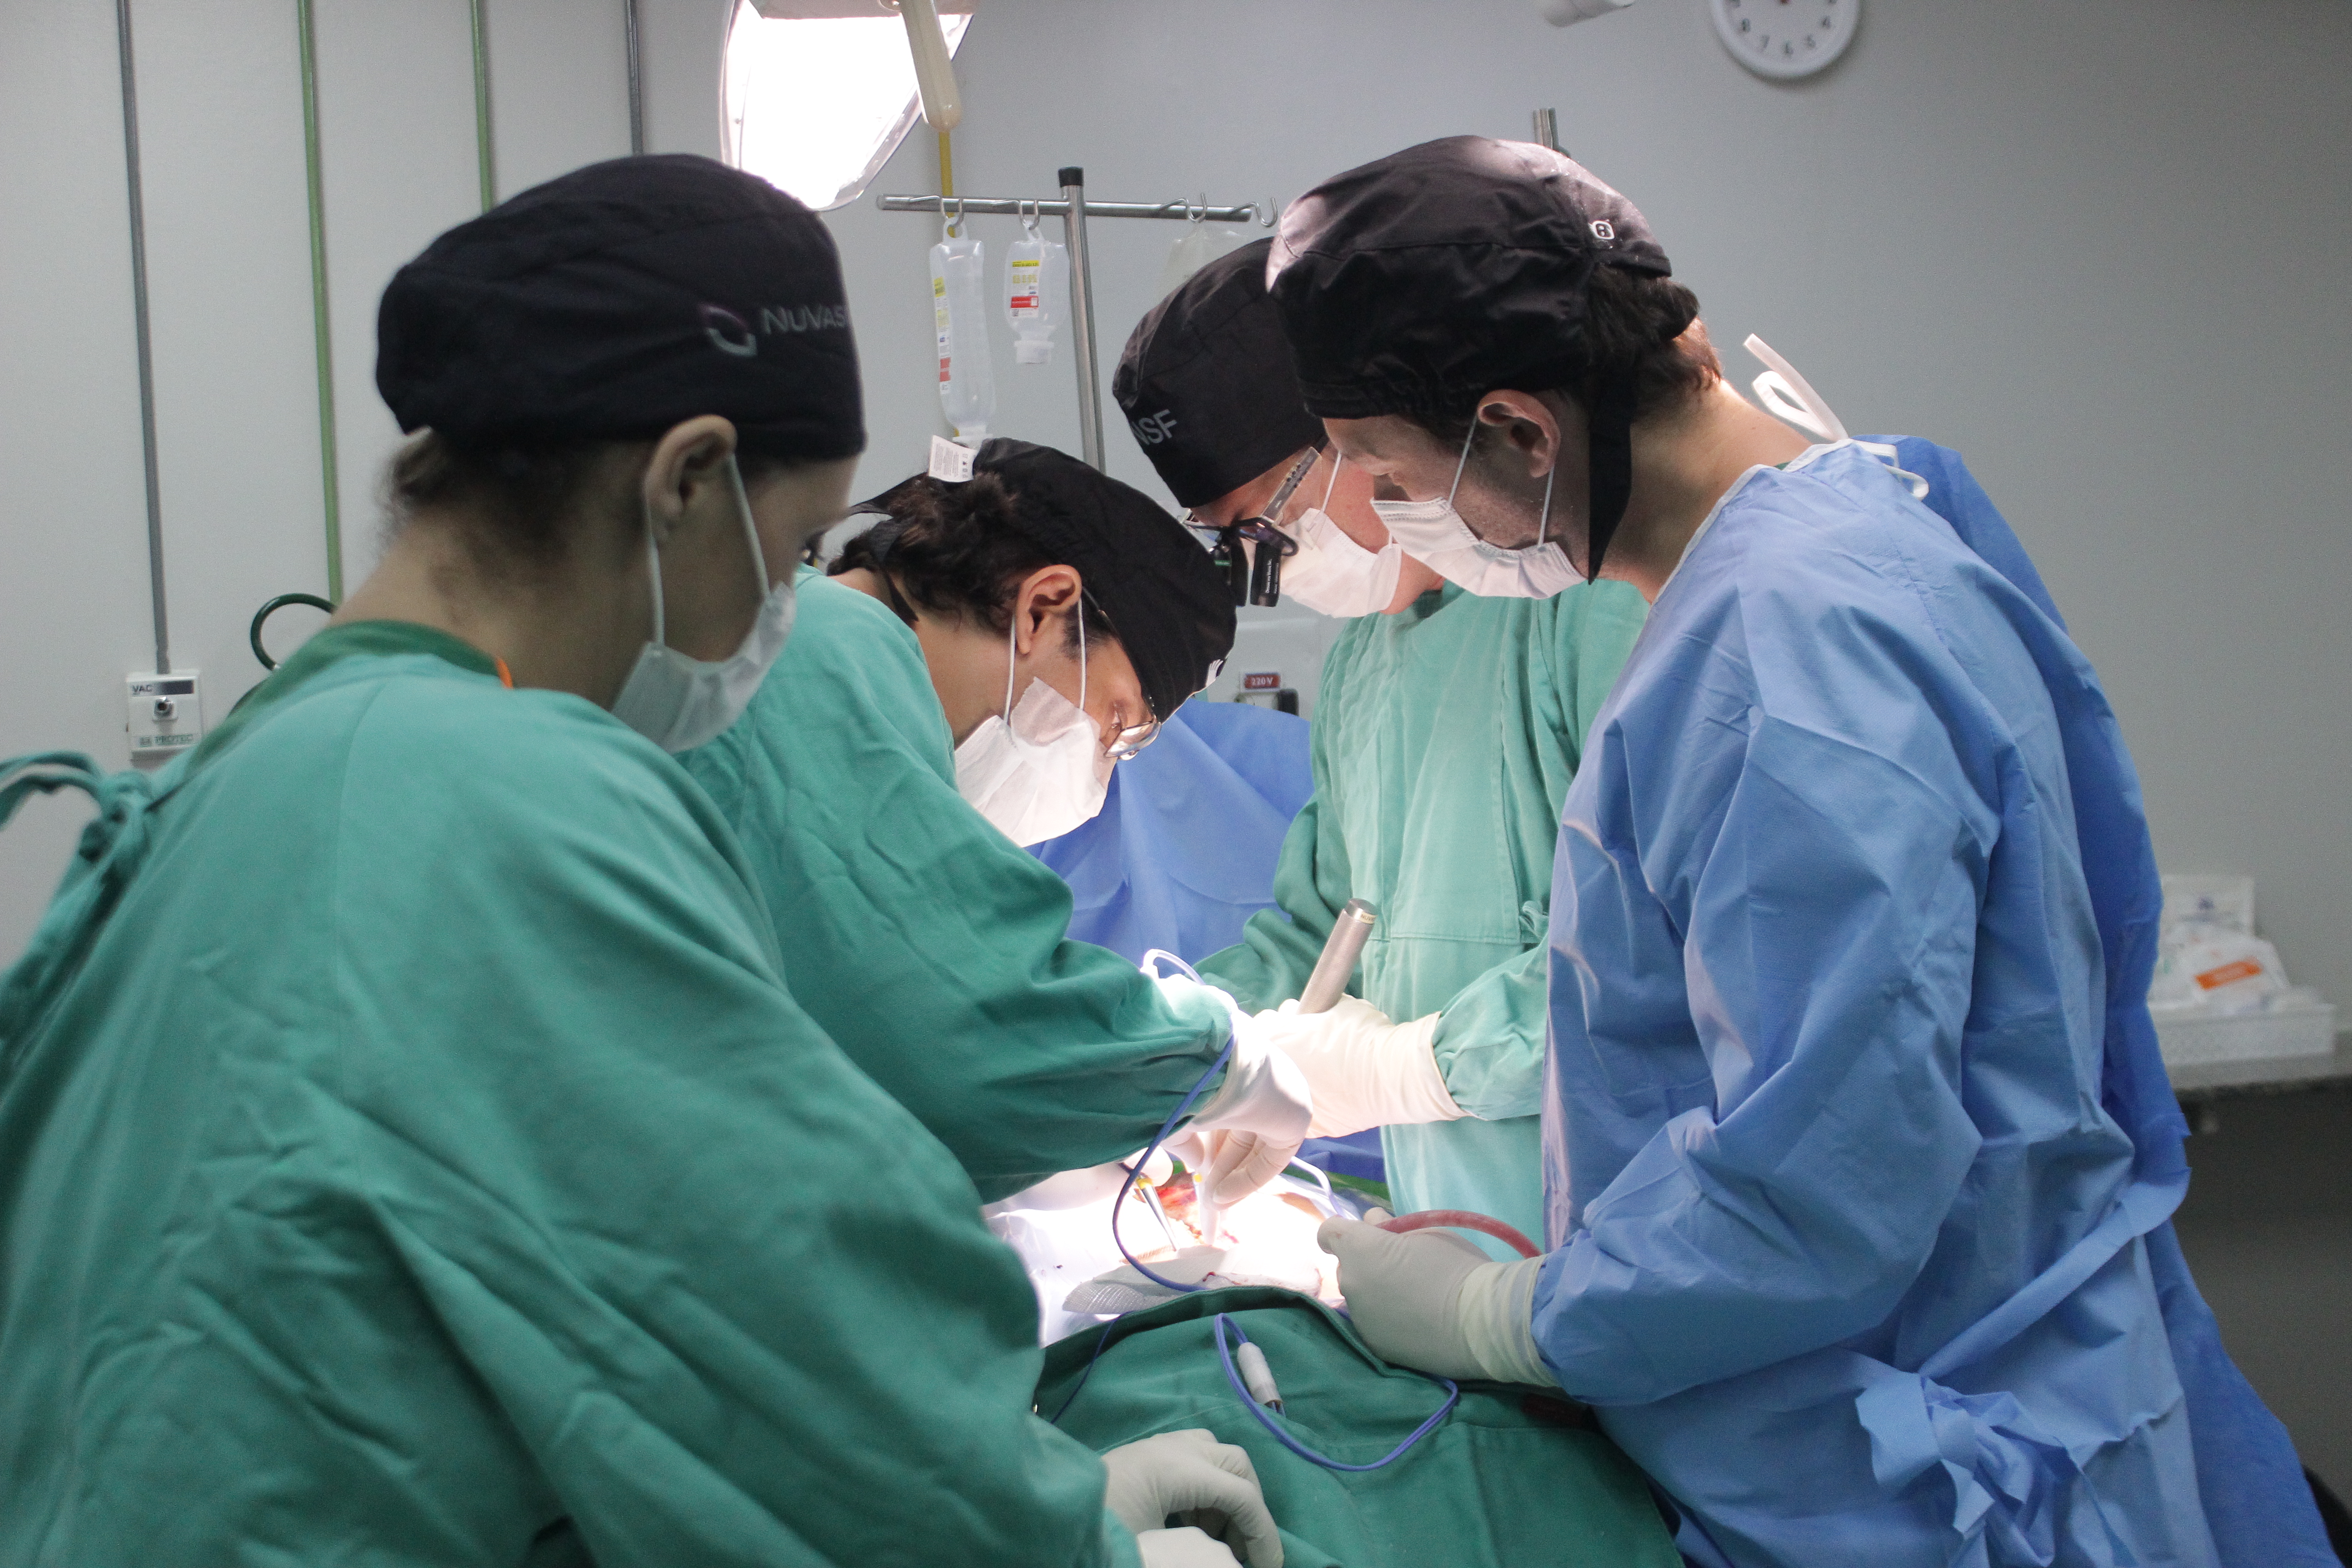 II Mutirão de Escoliose do HU-UFMA realiza 12 cirurgias em três dias